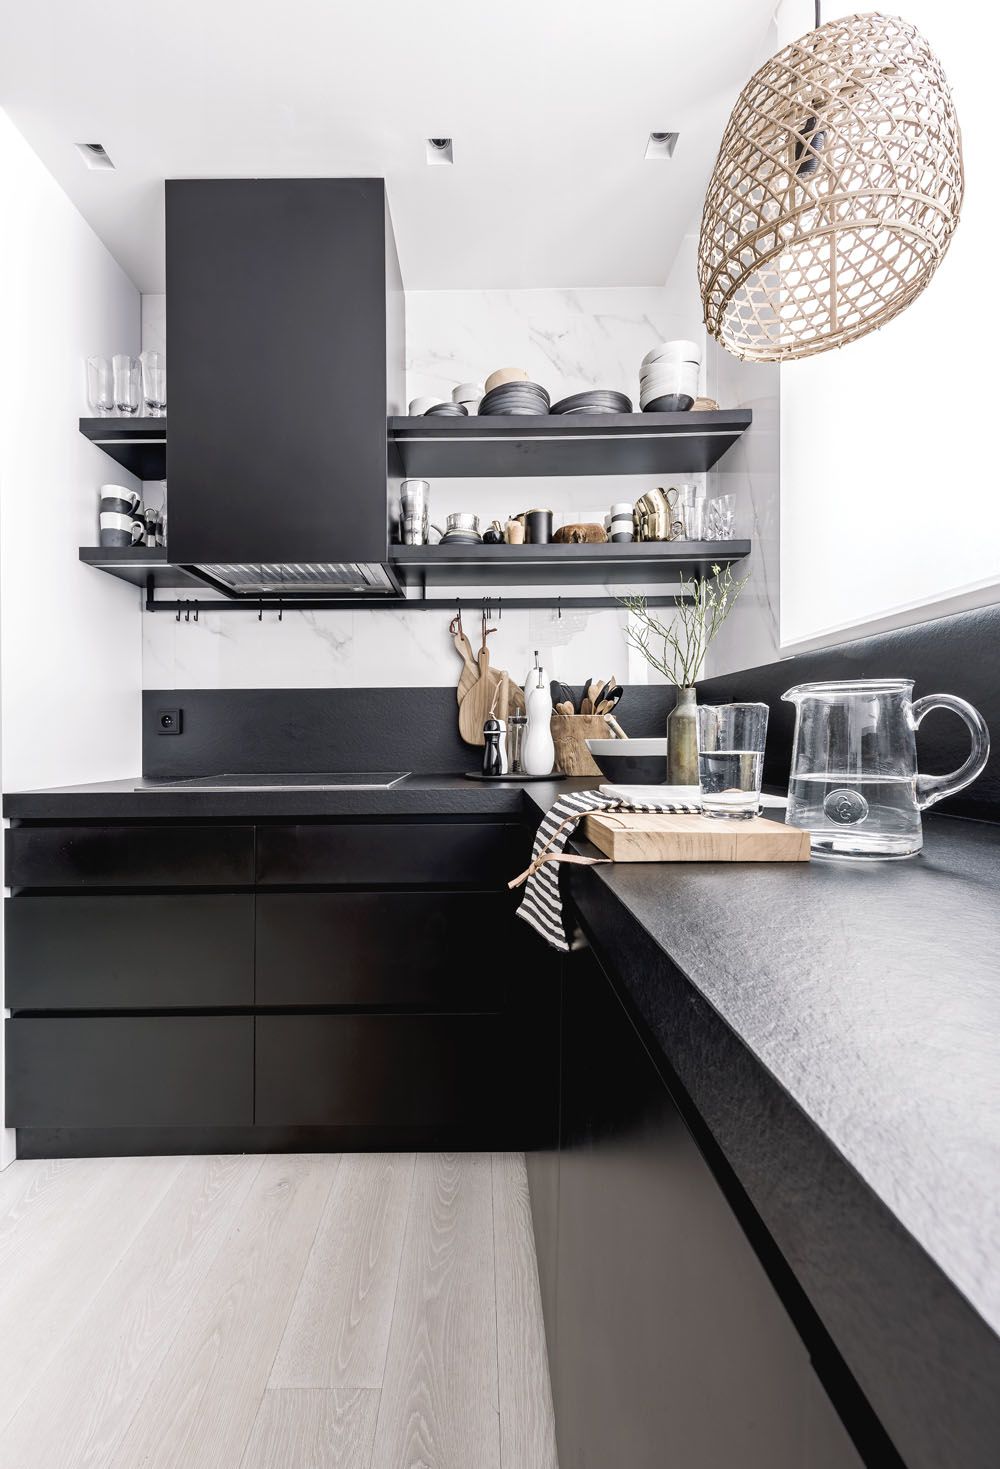 Kuchyňská sestava nábytku je navržena na míru podle autorského návrhu architekta Martina Franka v černobílé kombinaci a komfortně vybavena všemi nezbytnými spotřebiči.